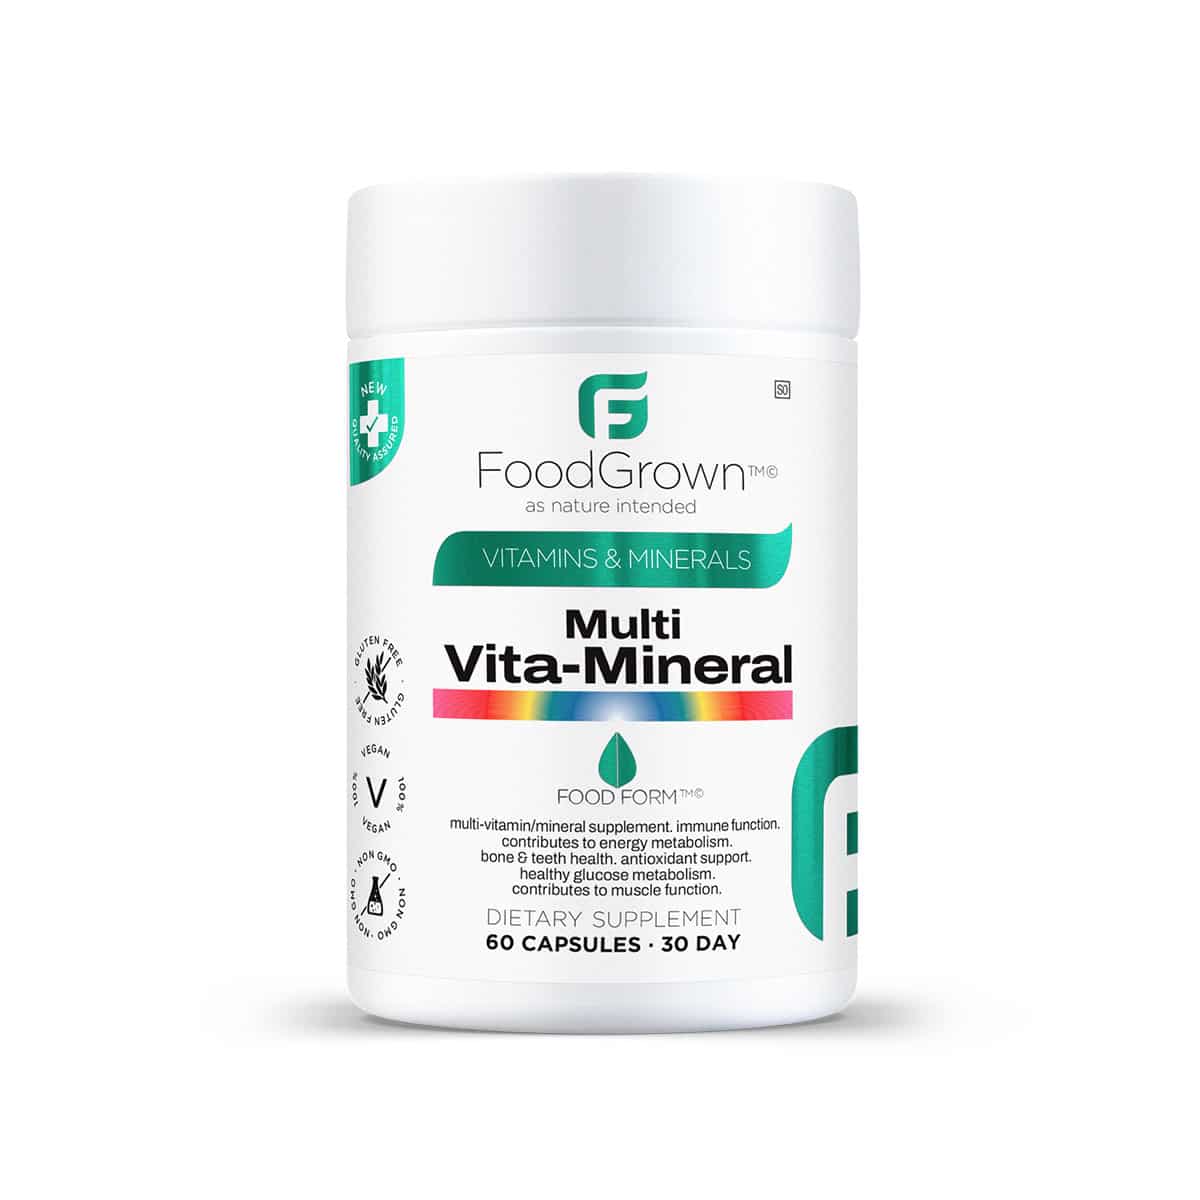 Food Grown Multi Vita-Mineral - 60 Vegecaps